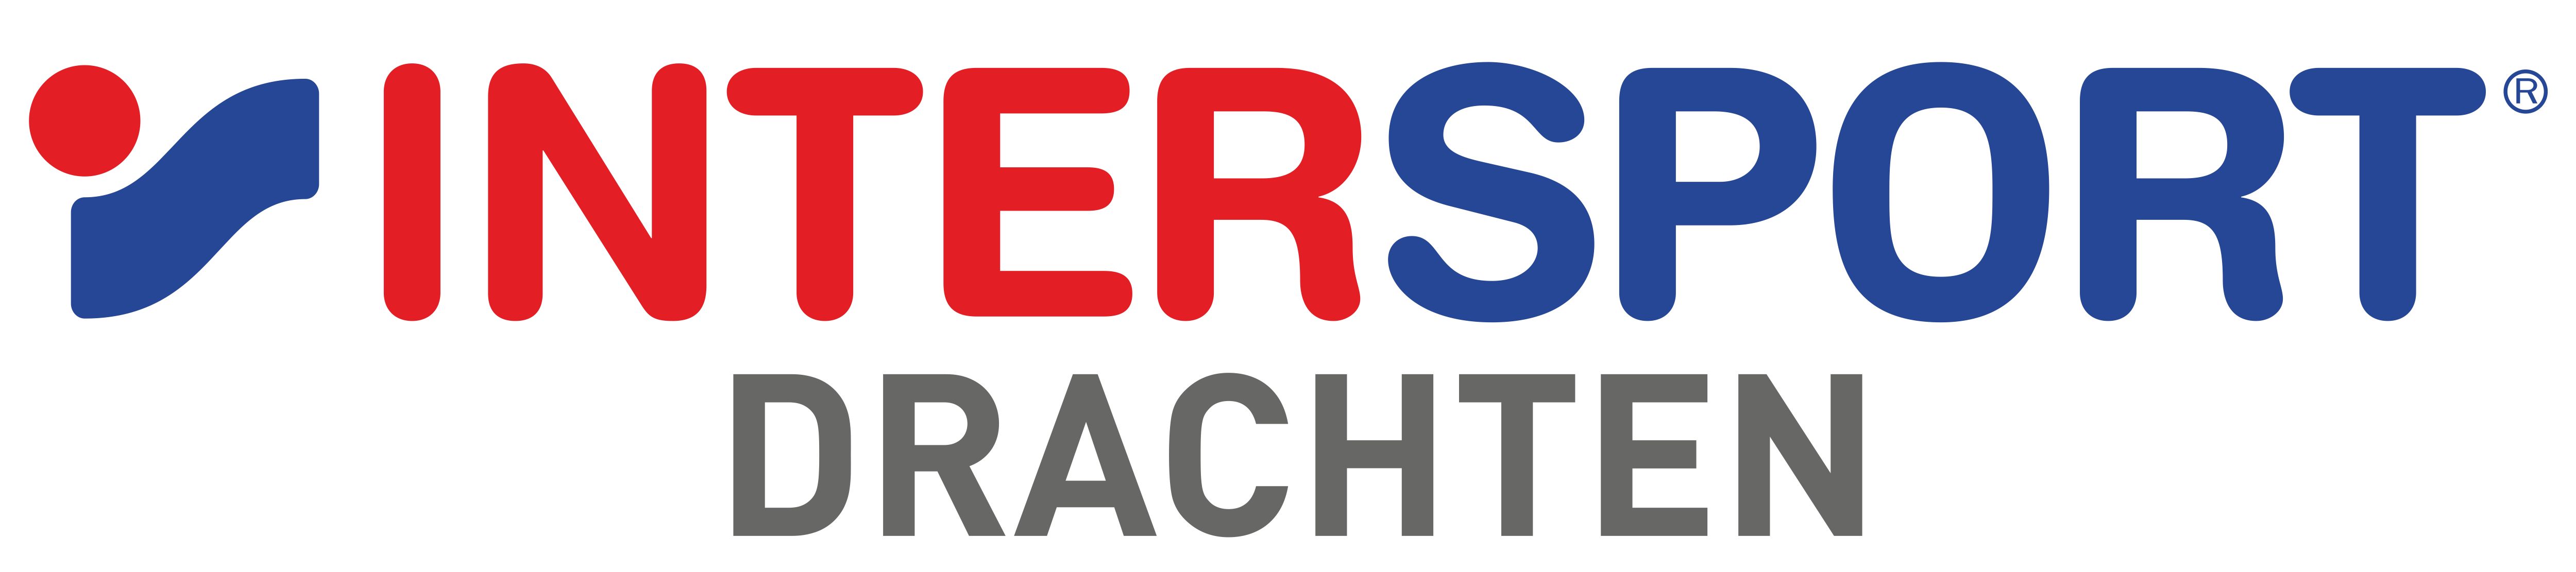 VV Oerterp Logo 2